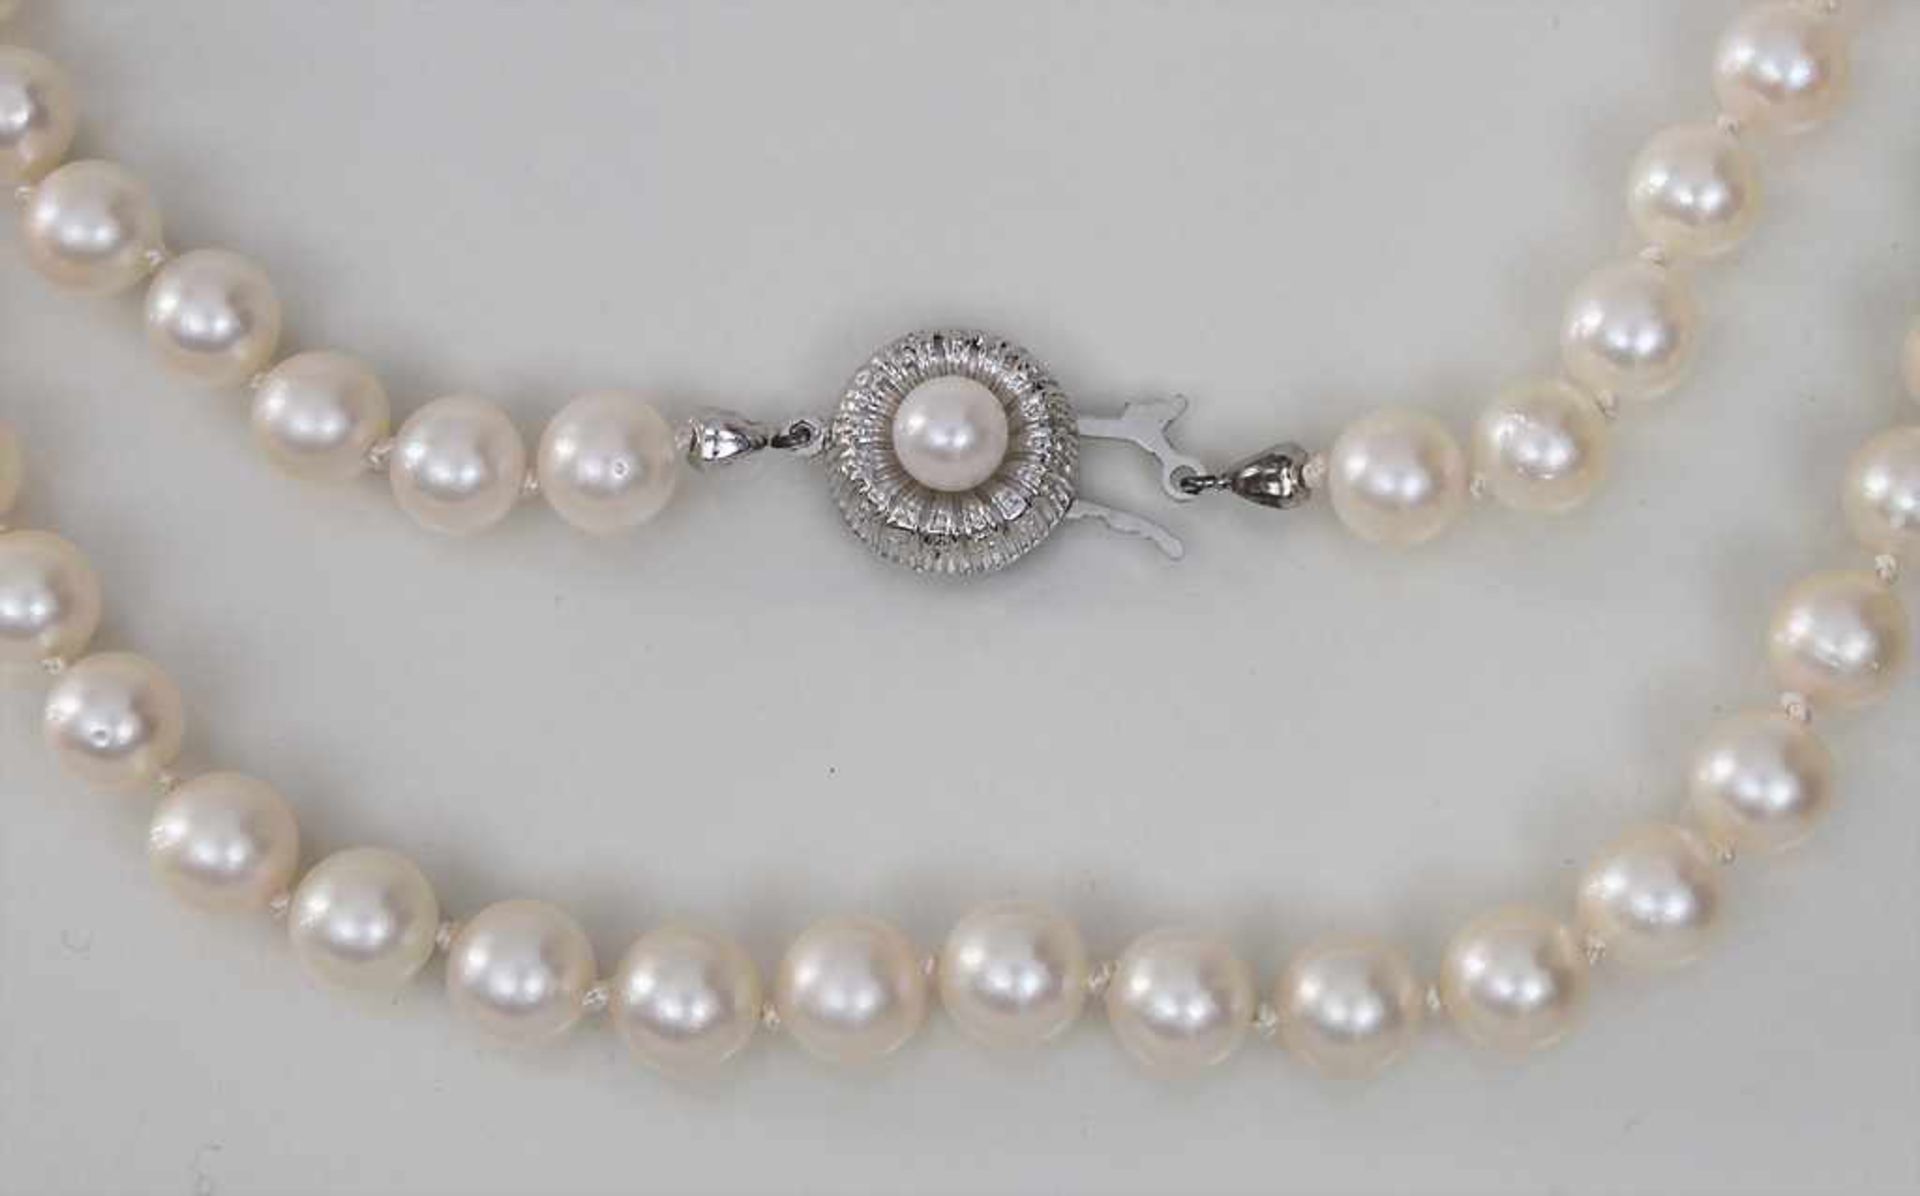 Perlencollier / Collier of Pearls Material: Zuchtperlen einzeln geknotet, Schließe 835 Silber,Länge: